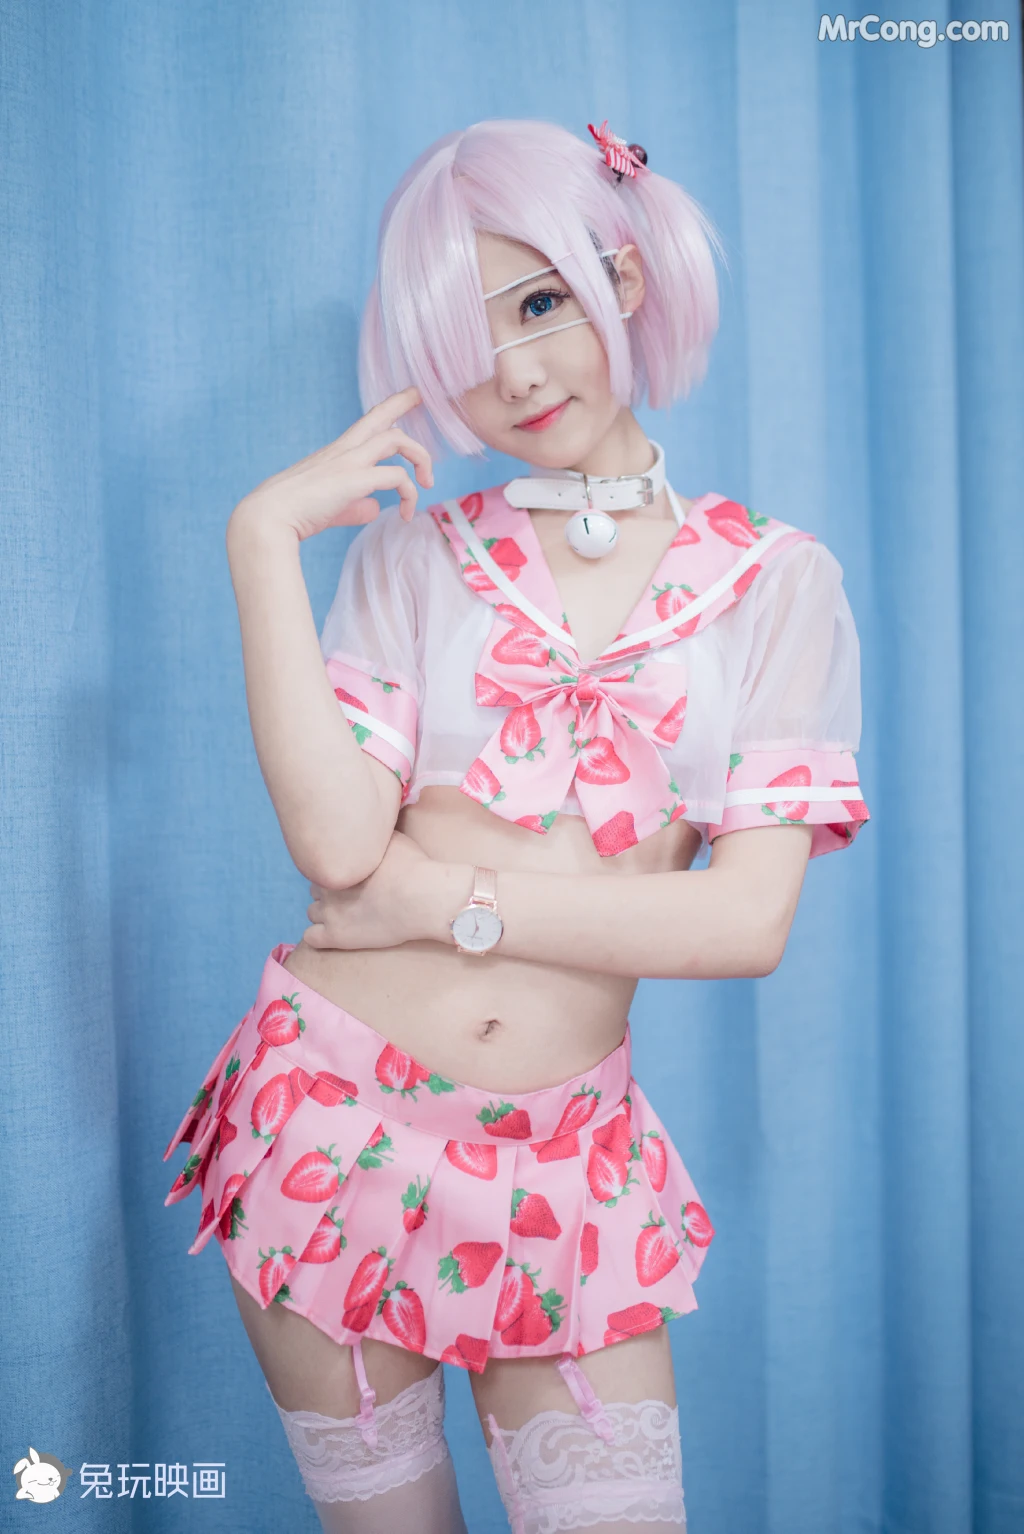 Cosplay@兔玩映画 Vol.016: 草莓裙 (42 photos)